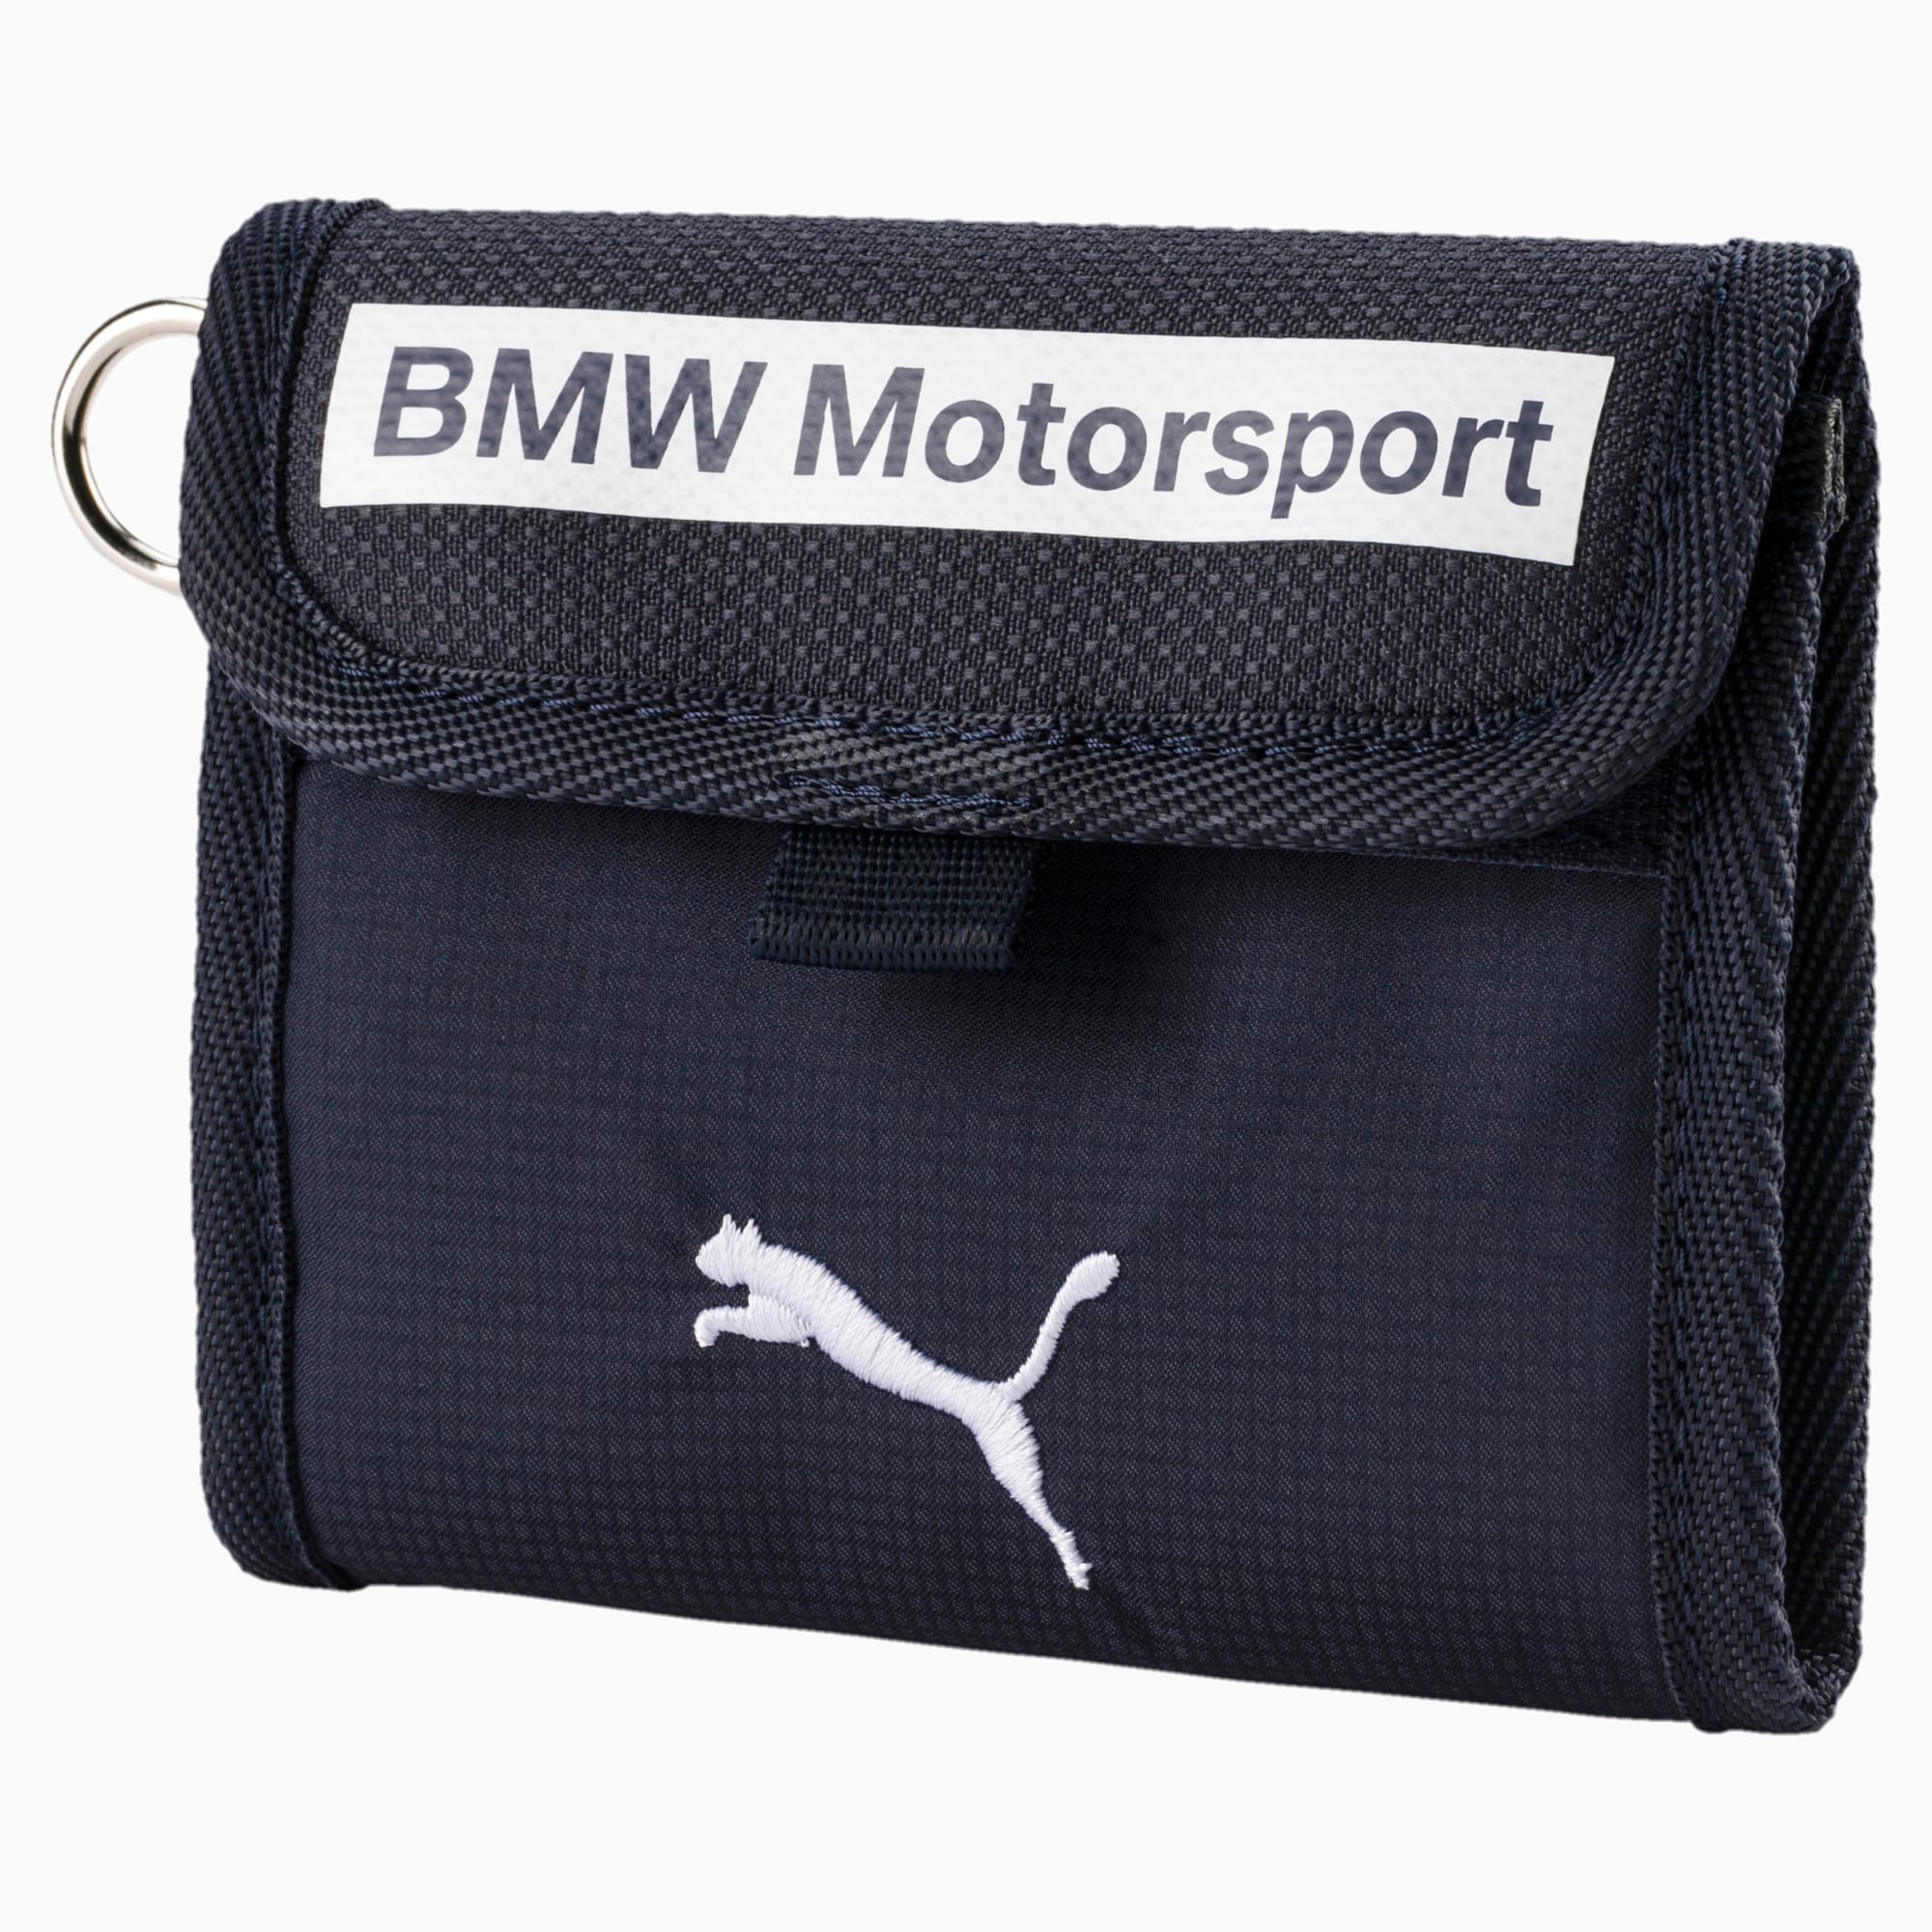 puma bmw motorsport wallet